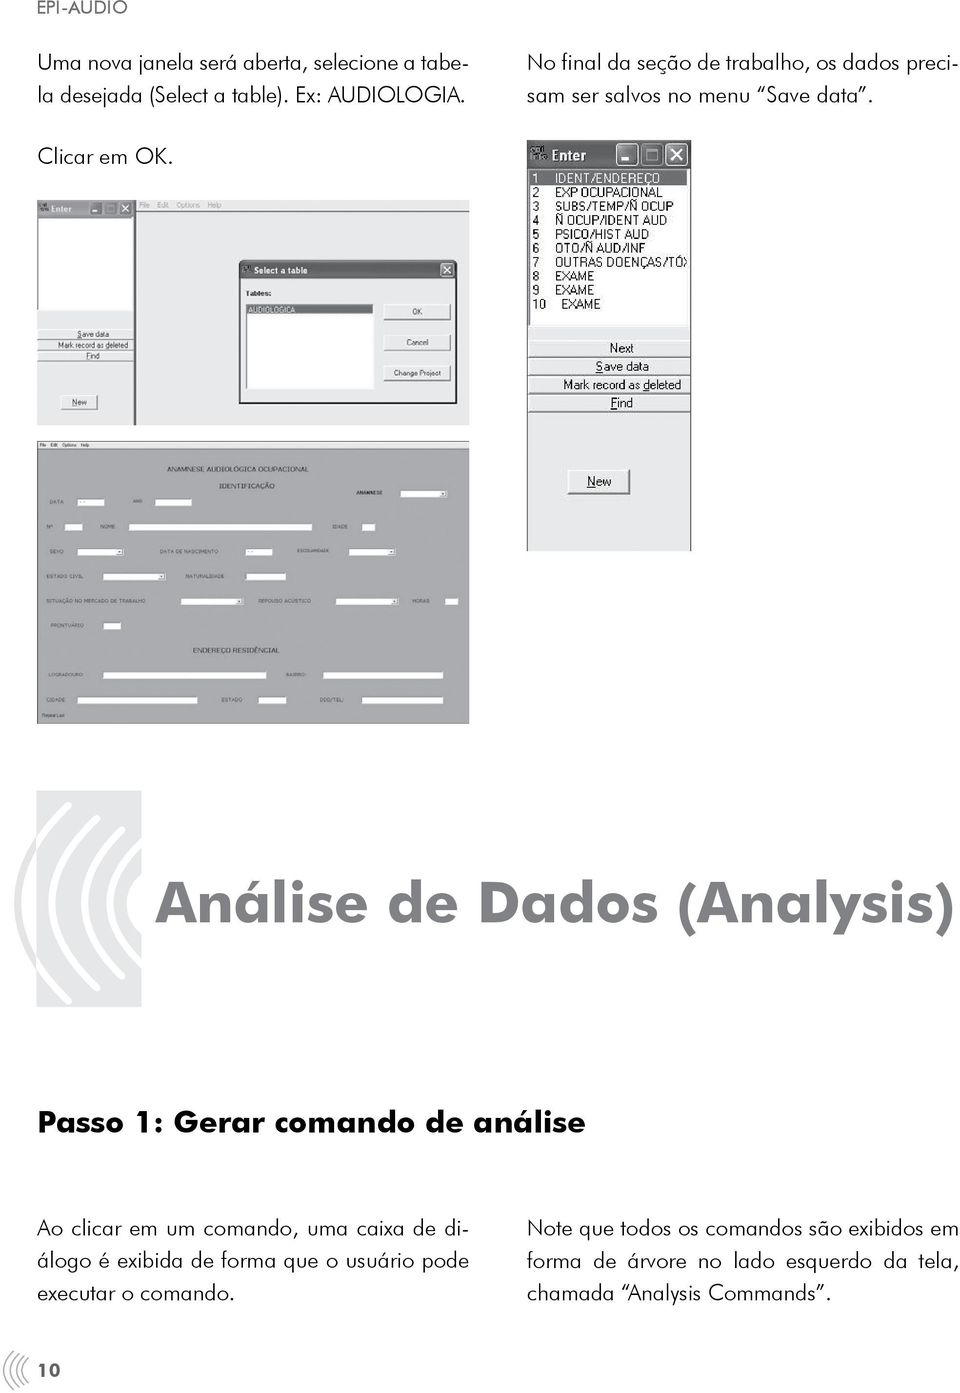 Análise de Dados (Analysis) Passo 1: Gerar comando de análise Ao clicar em um comando, uma caixa de diálogo é exibida